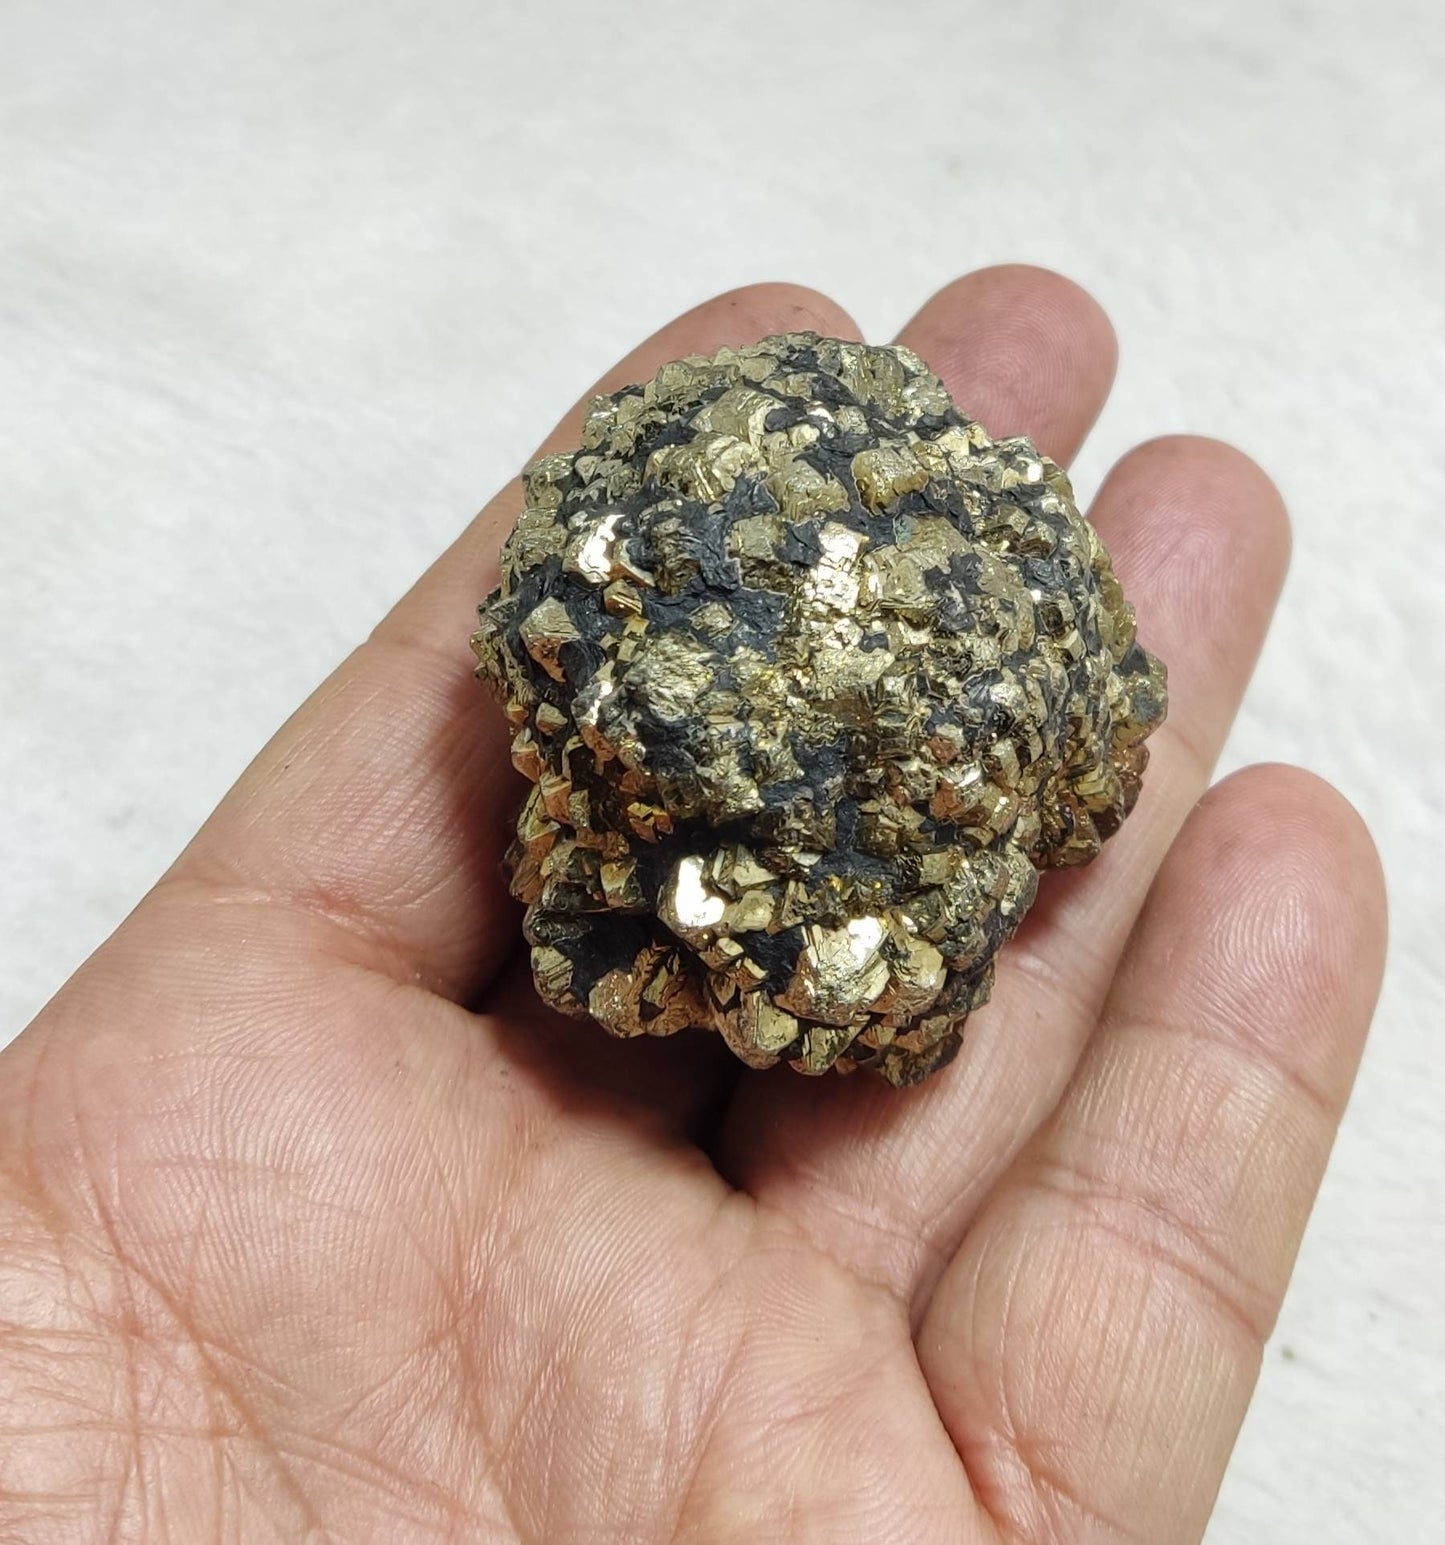 Pyrite/marcasite specimen 227 grams